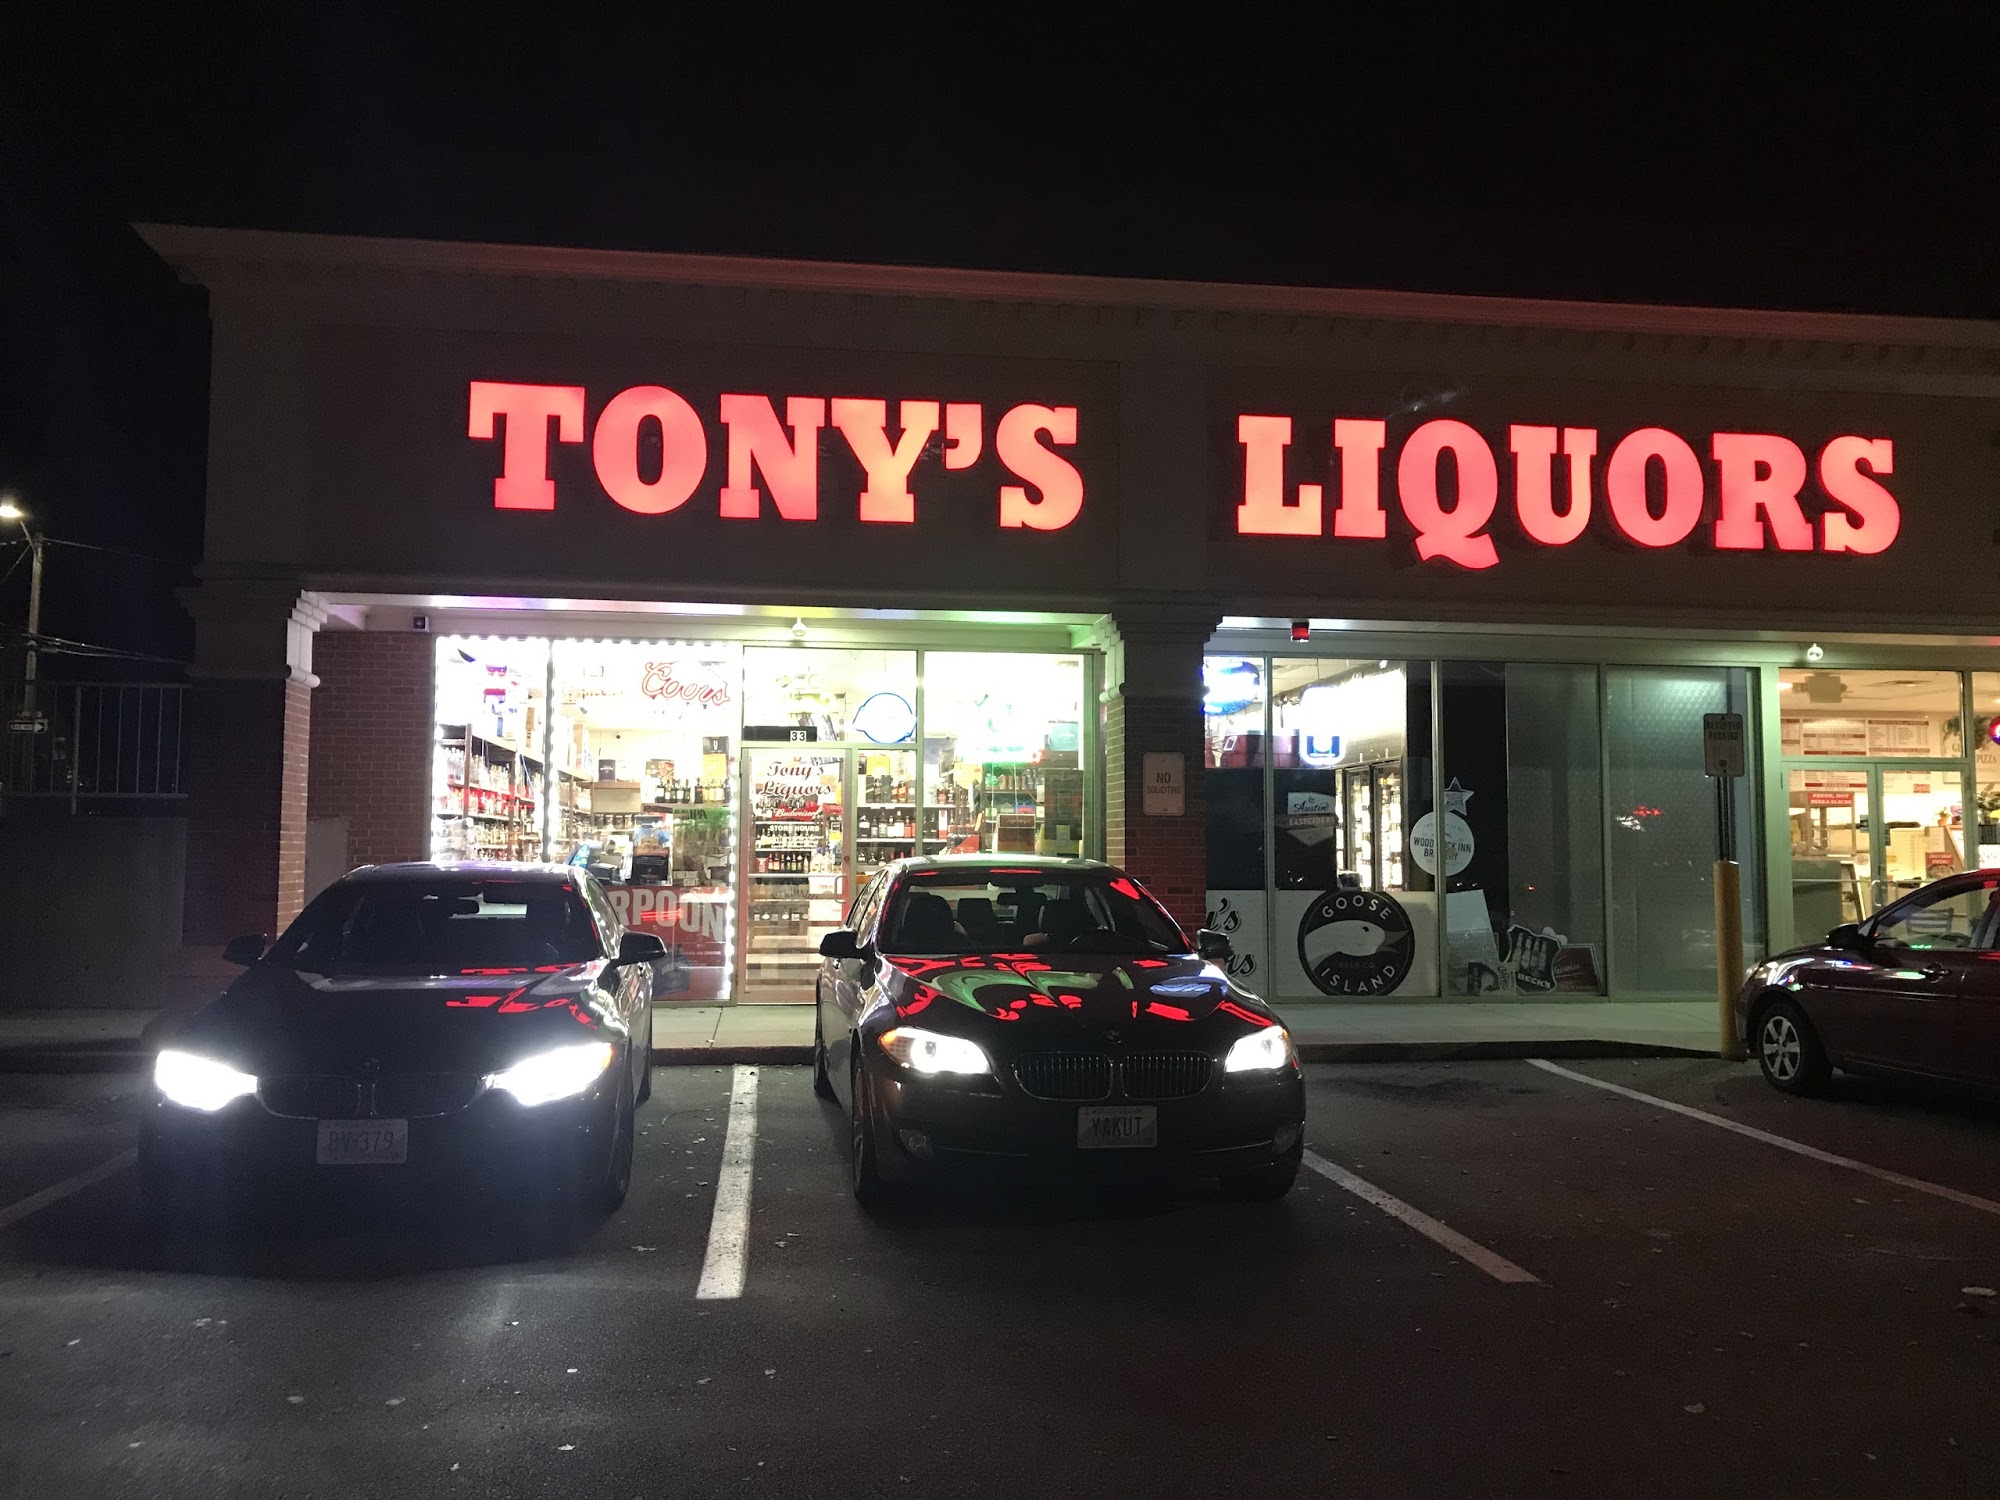 Tony's Liquors